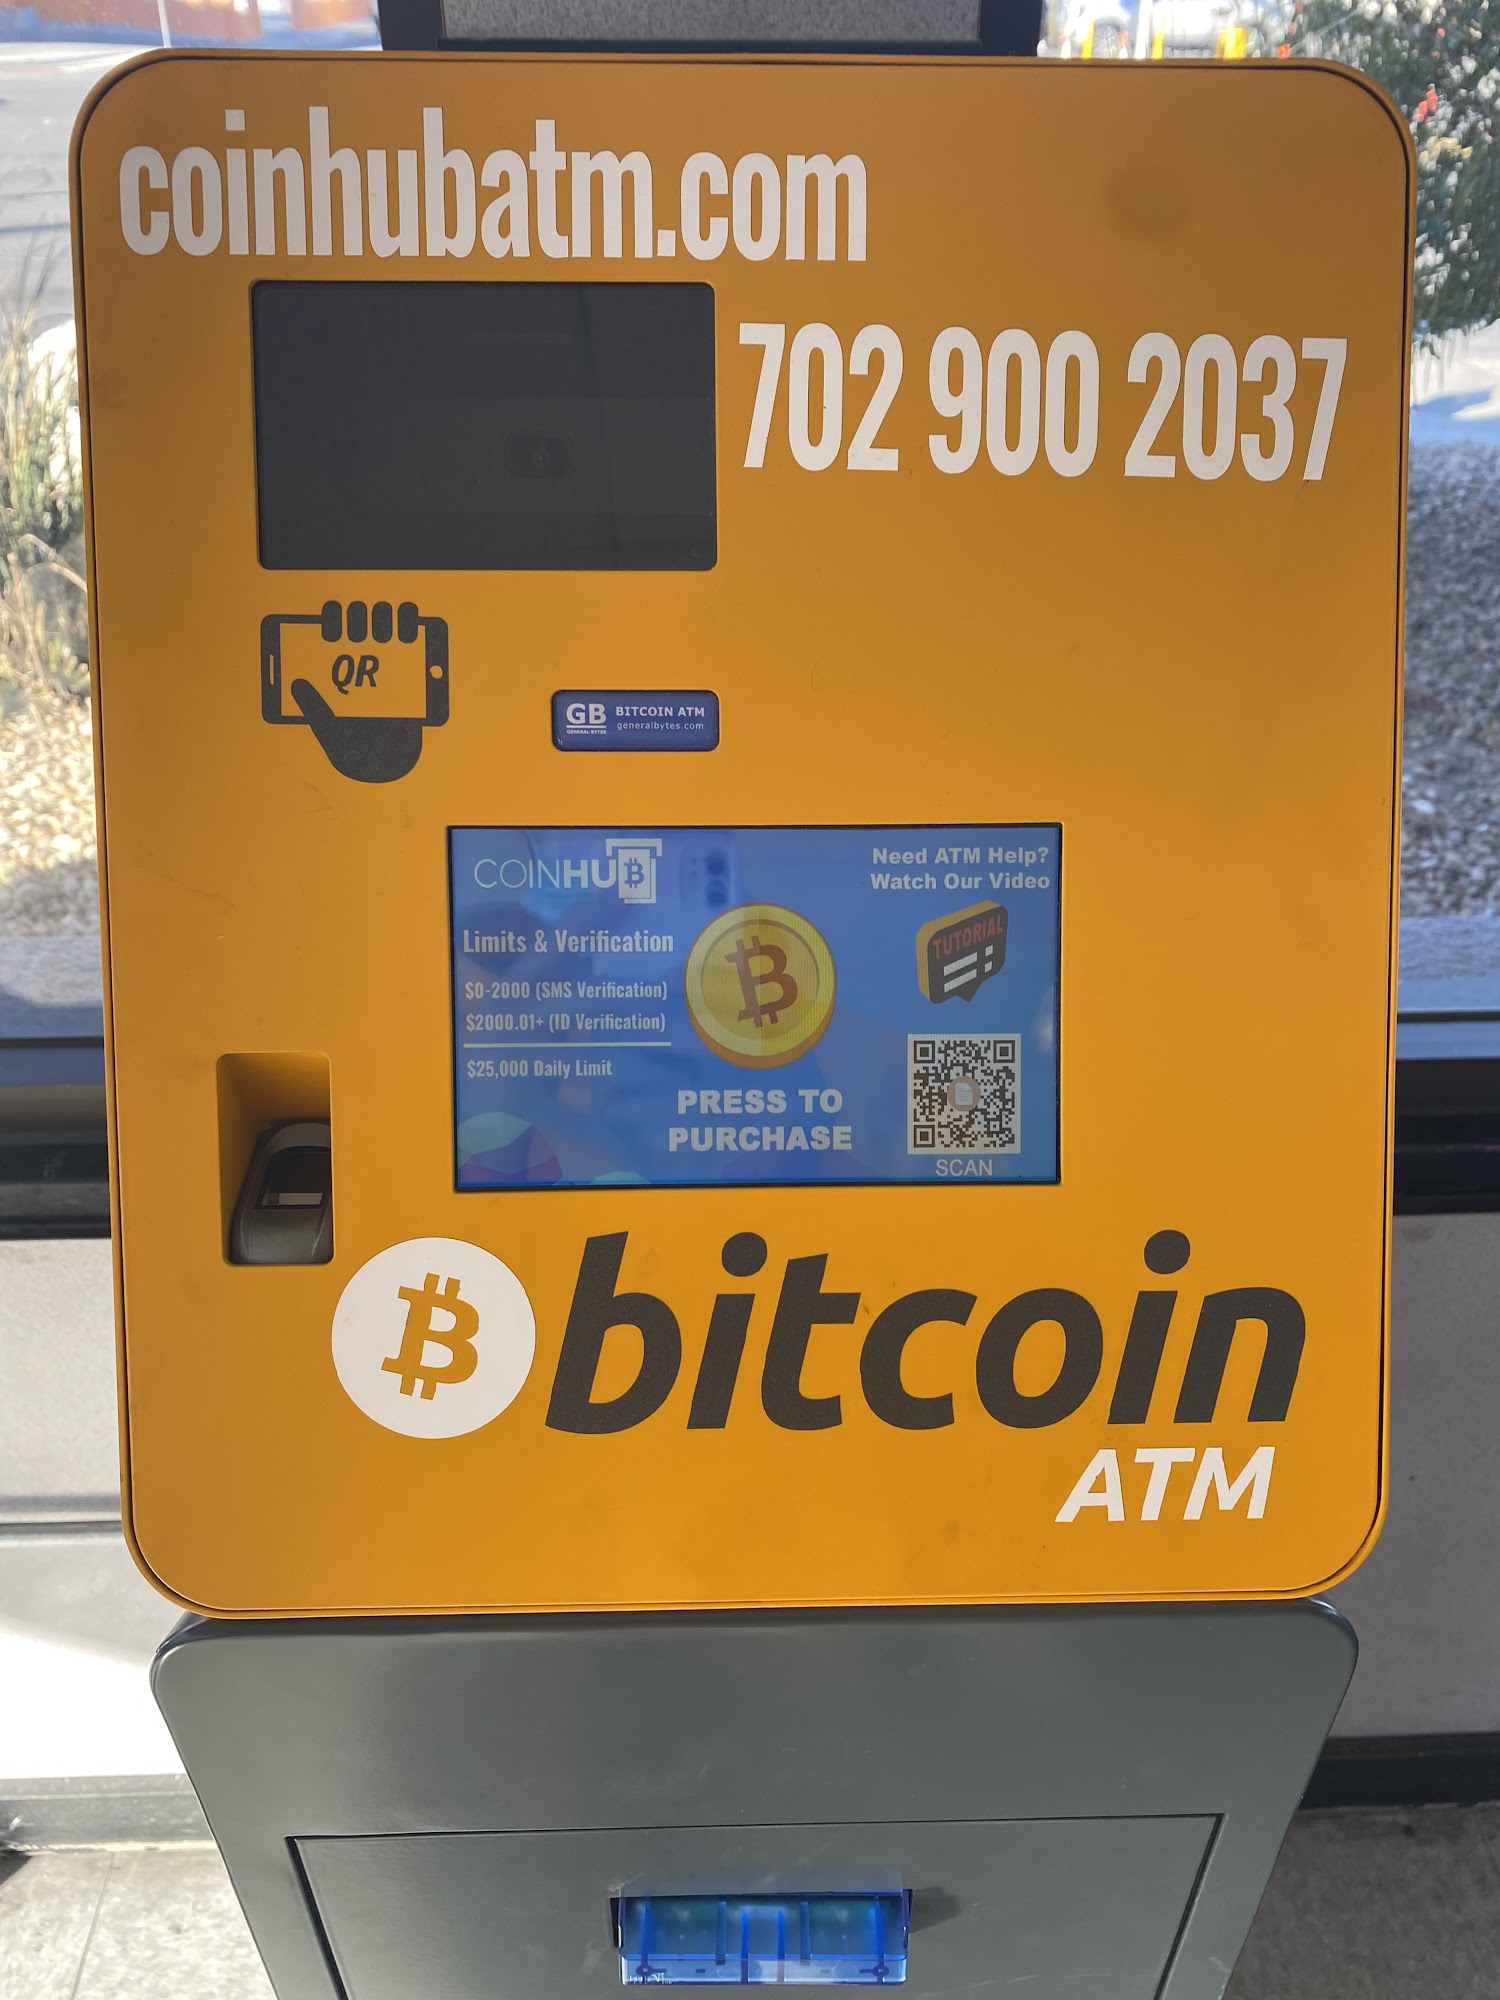 Bitcoin ATM Oak Harbor - Coinhub